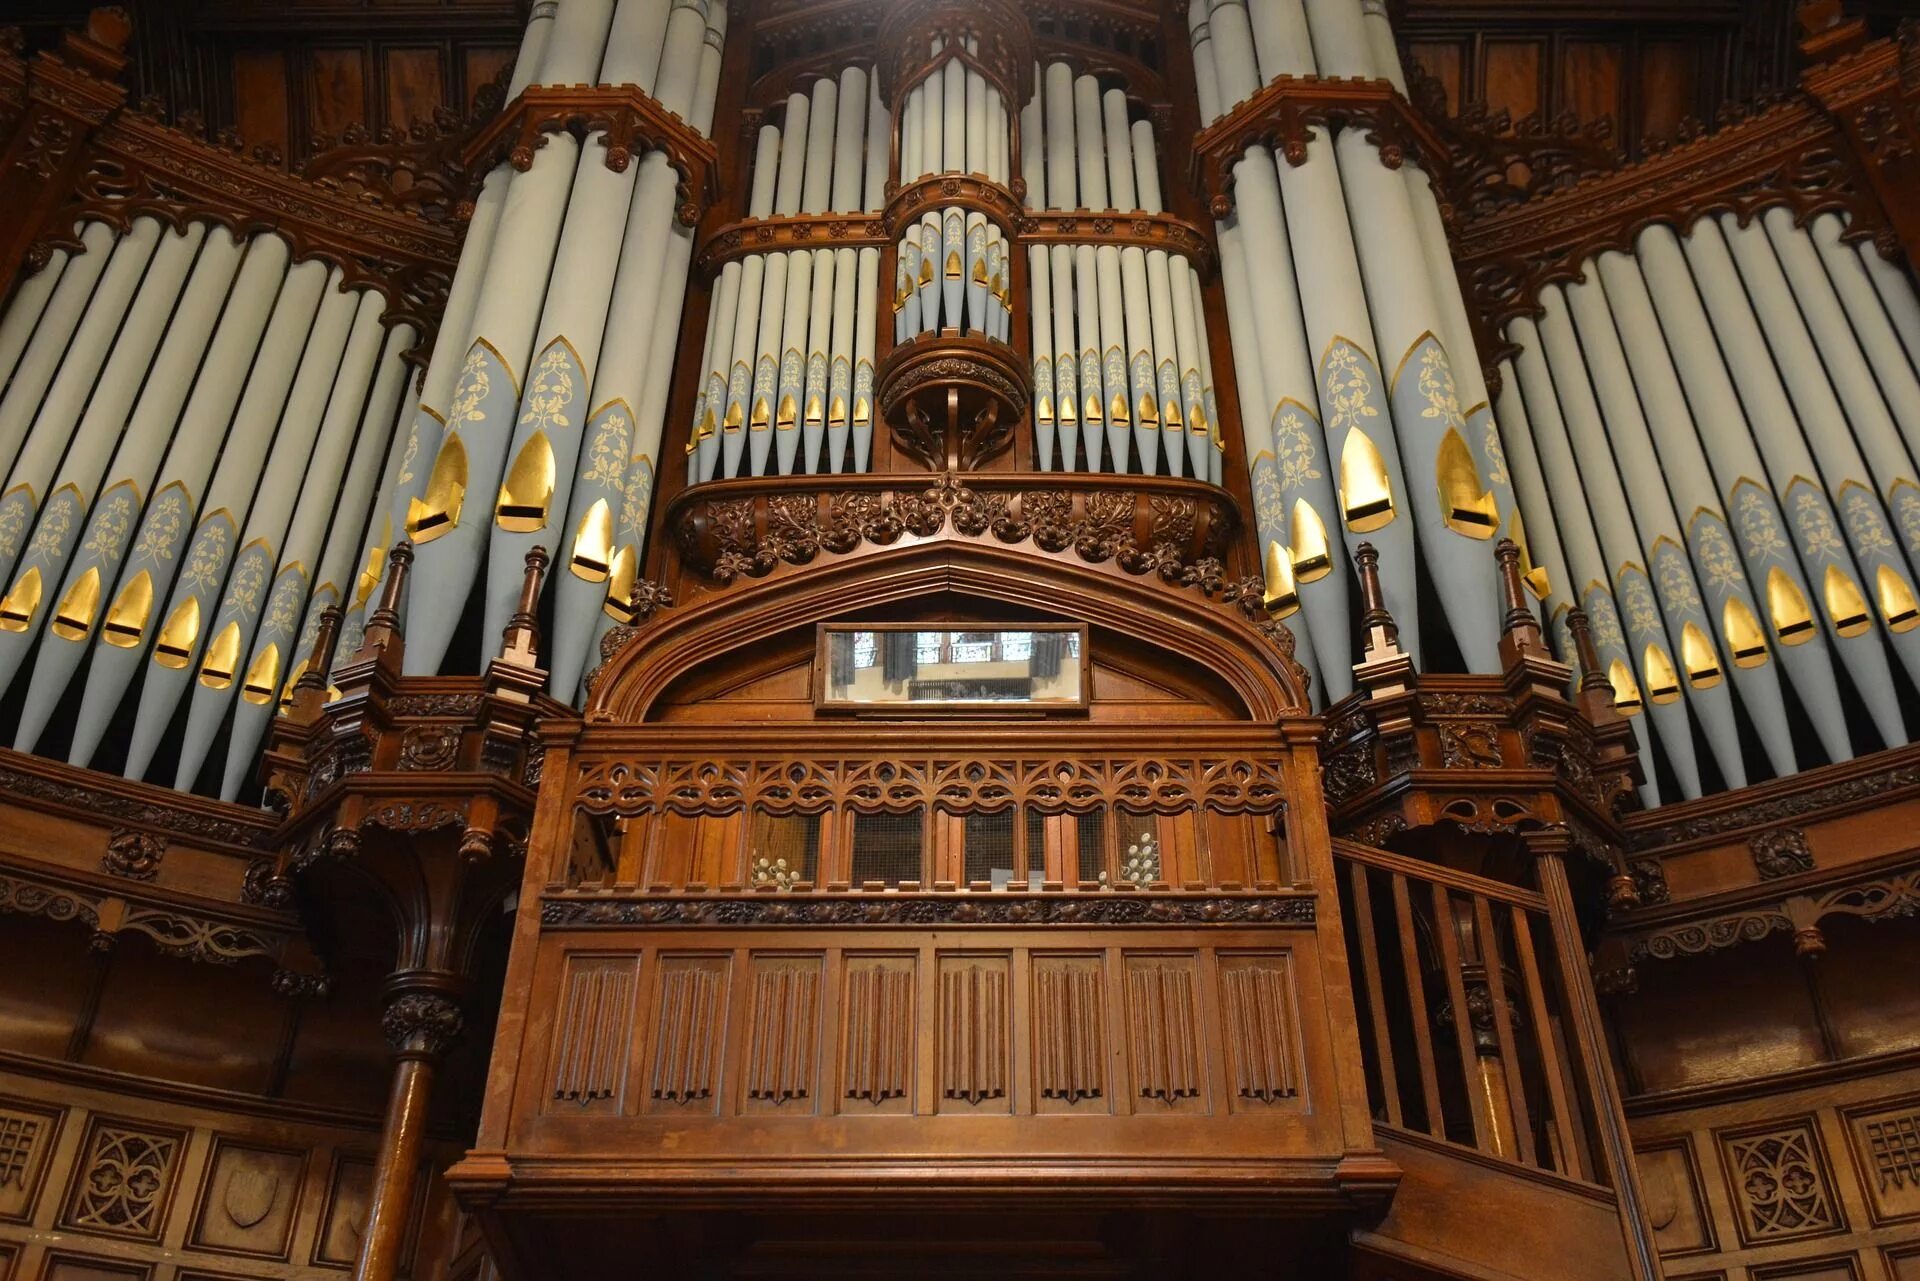 Орган 5 мая. Орган концертного зала Бордуок. Ратуша Дерри. Старинный орган. Орган музыкальный инструмент.